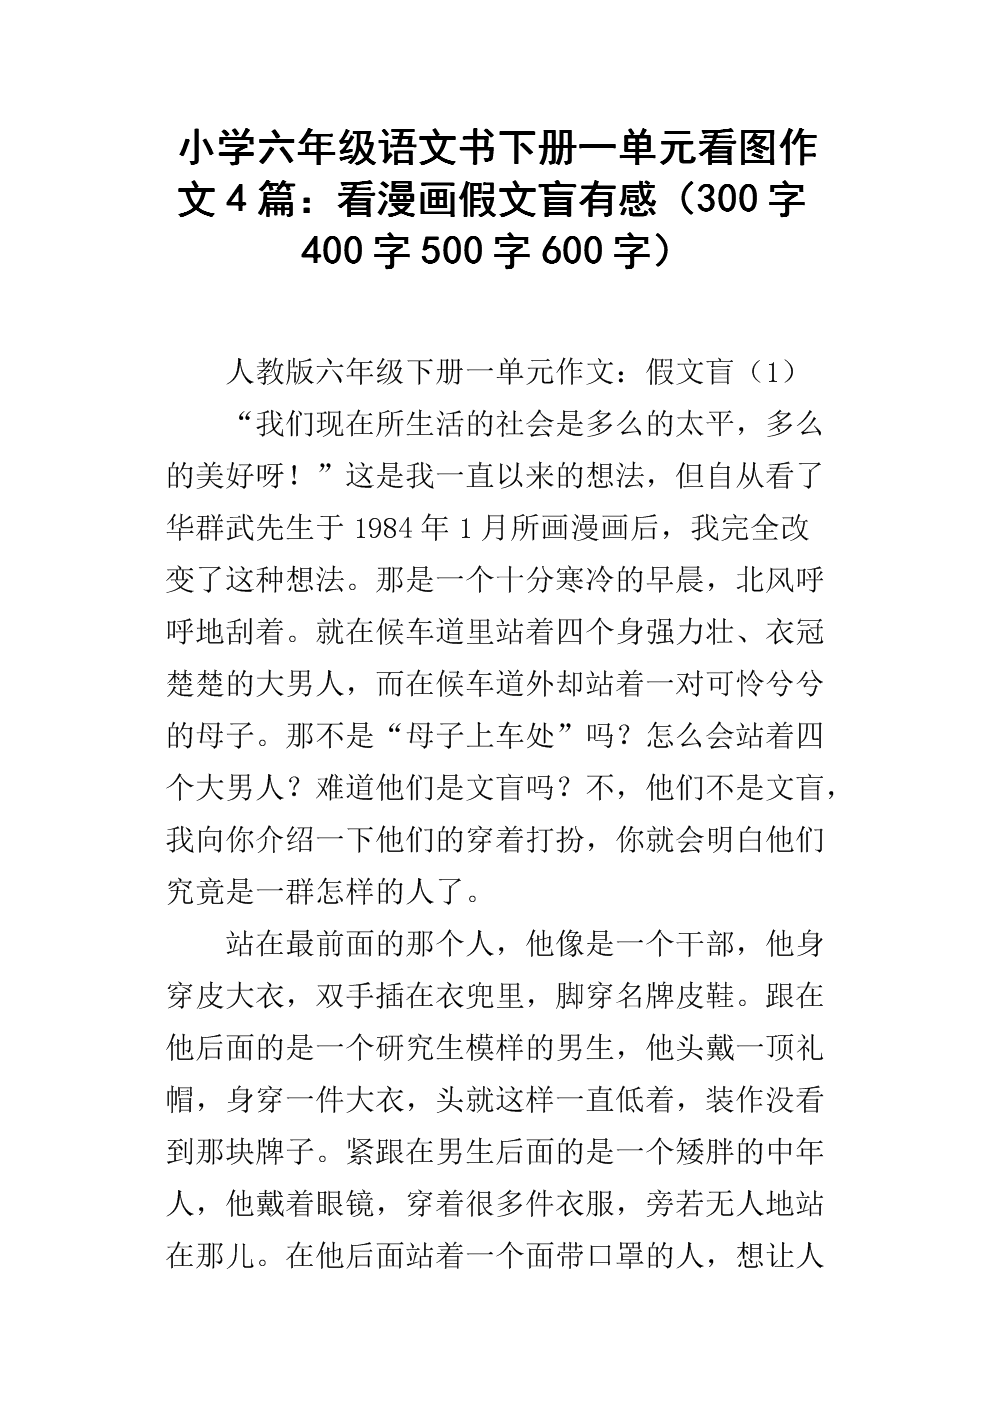 六年级下册中文第一单元作假文盲